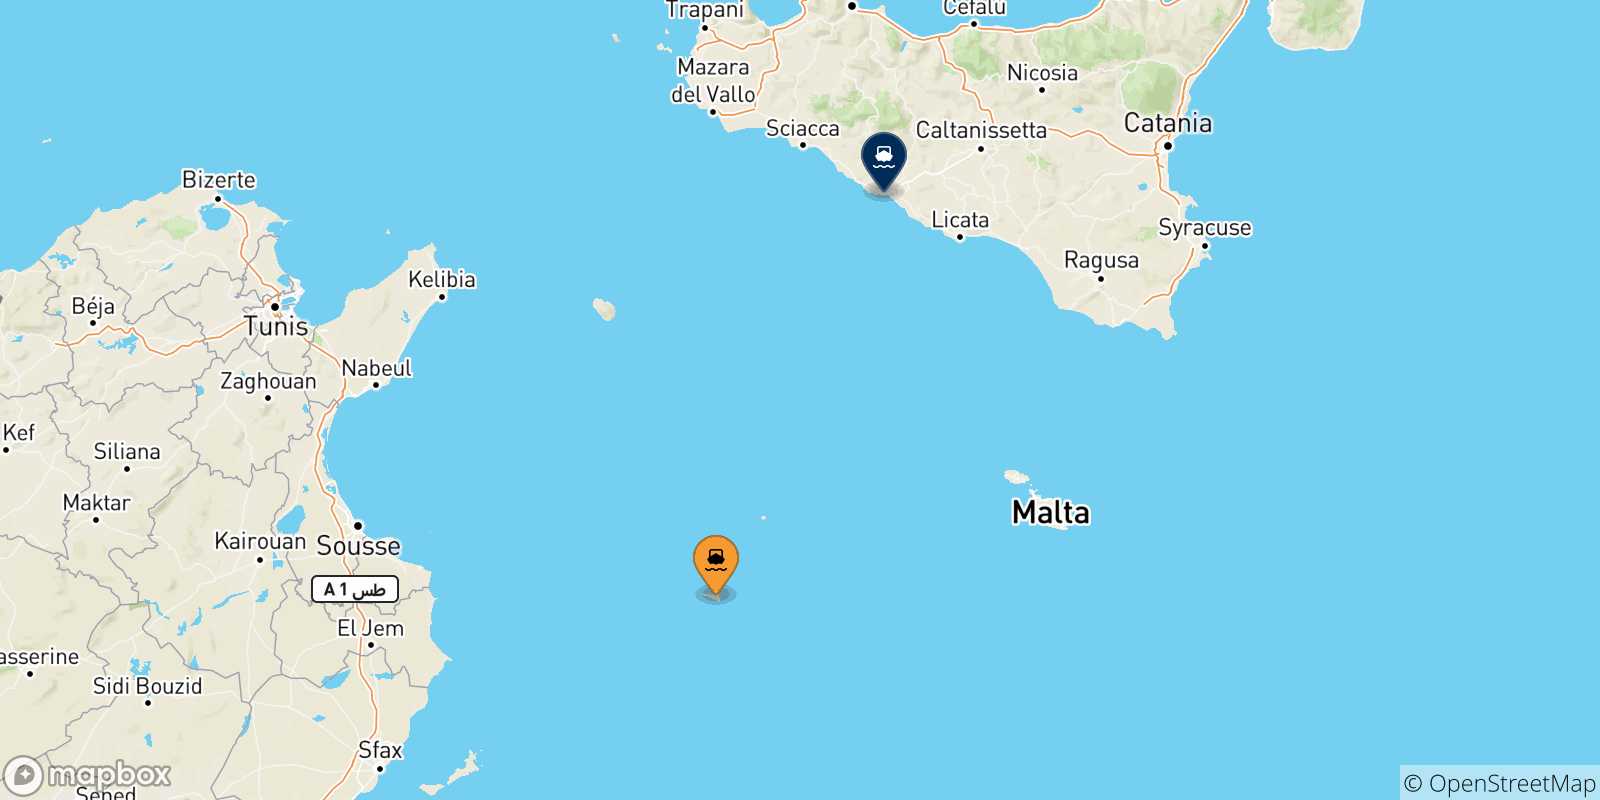 Mappa delle possibili rotte tra Lampedusa e la Sicilia